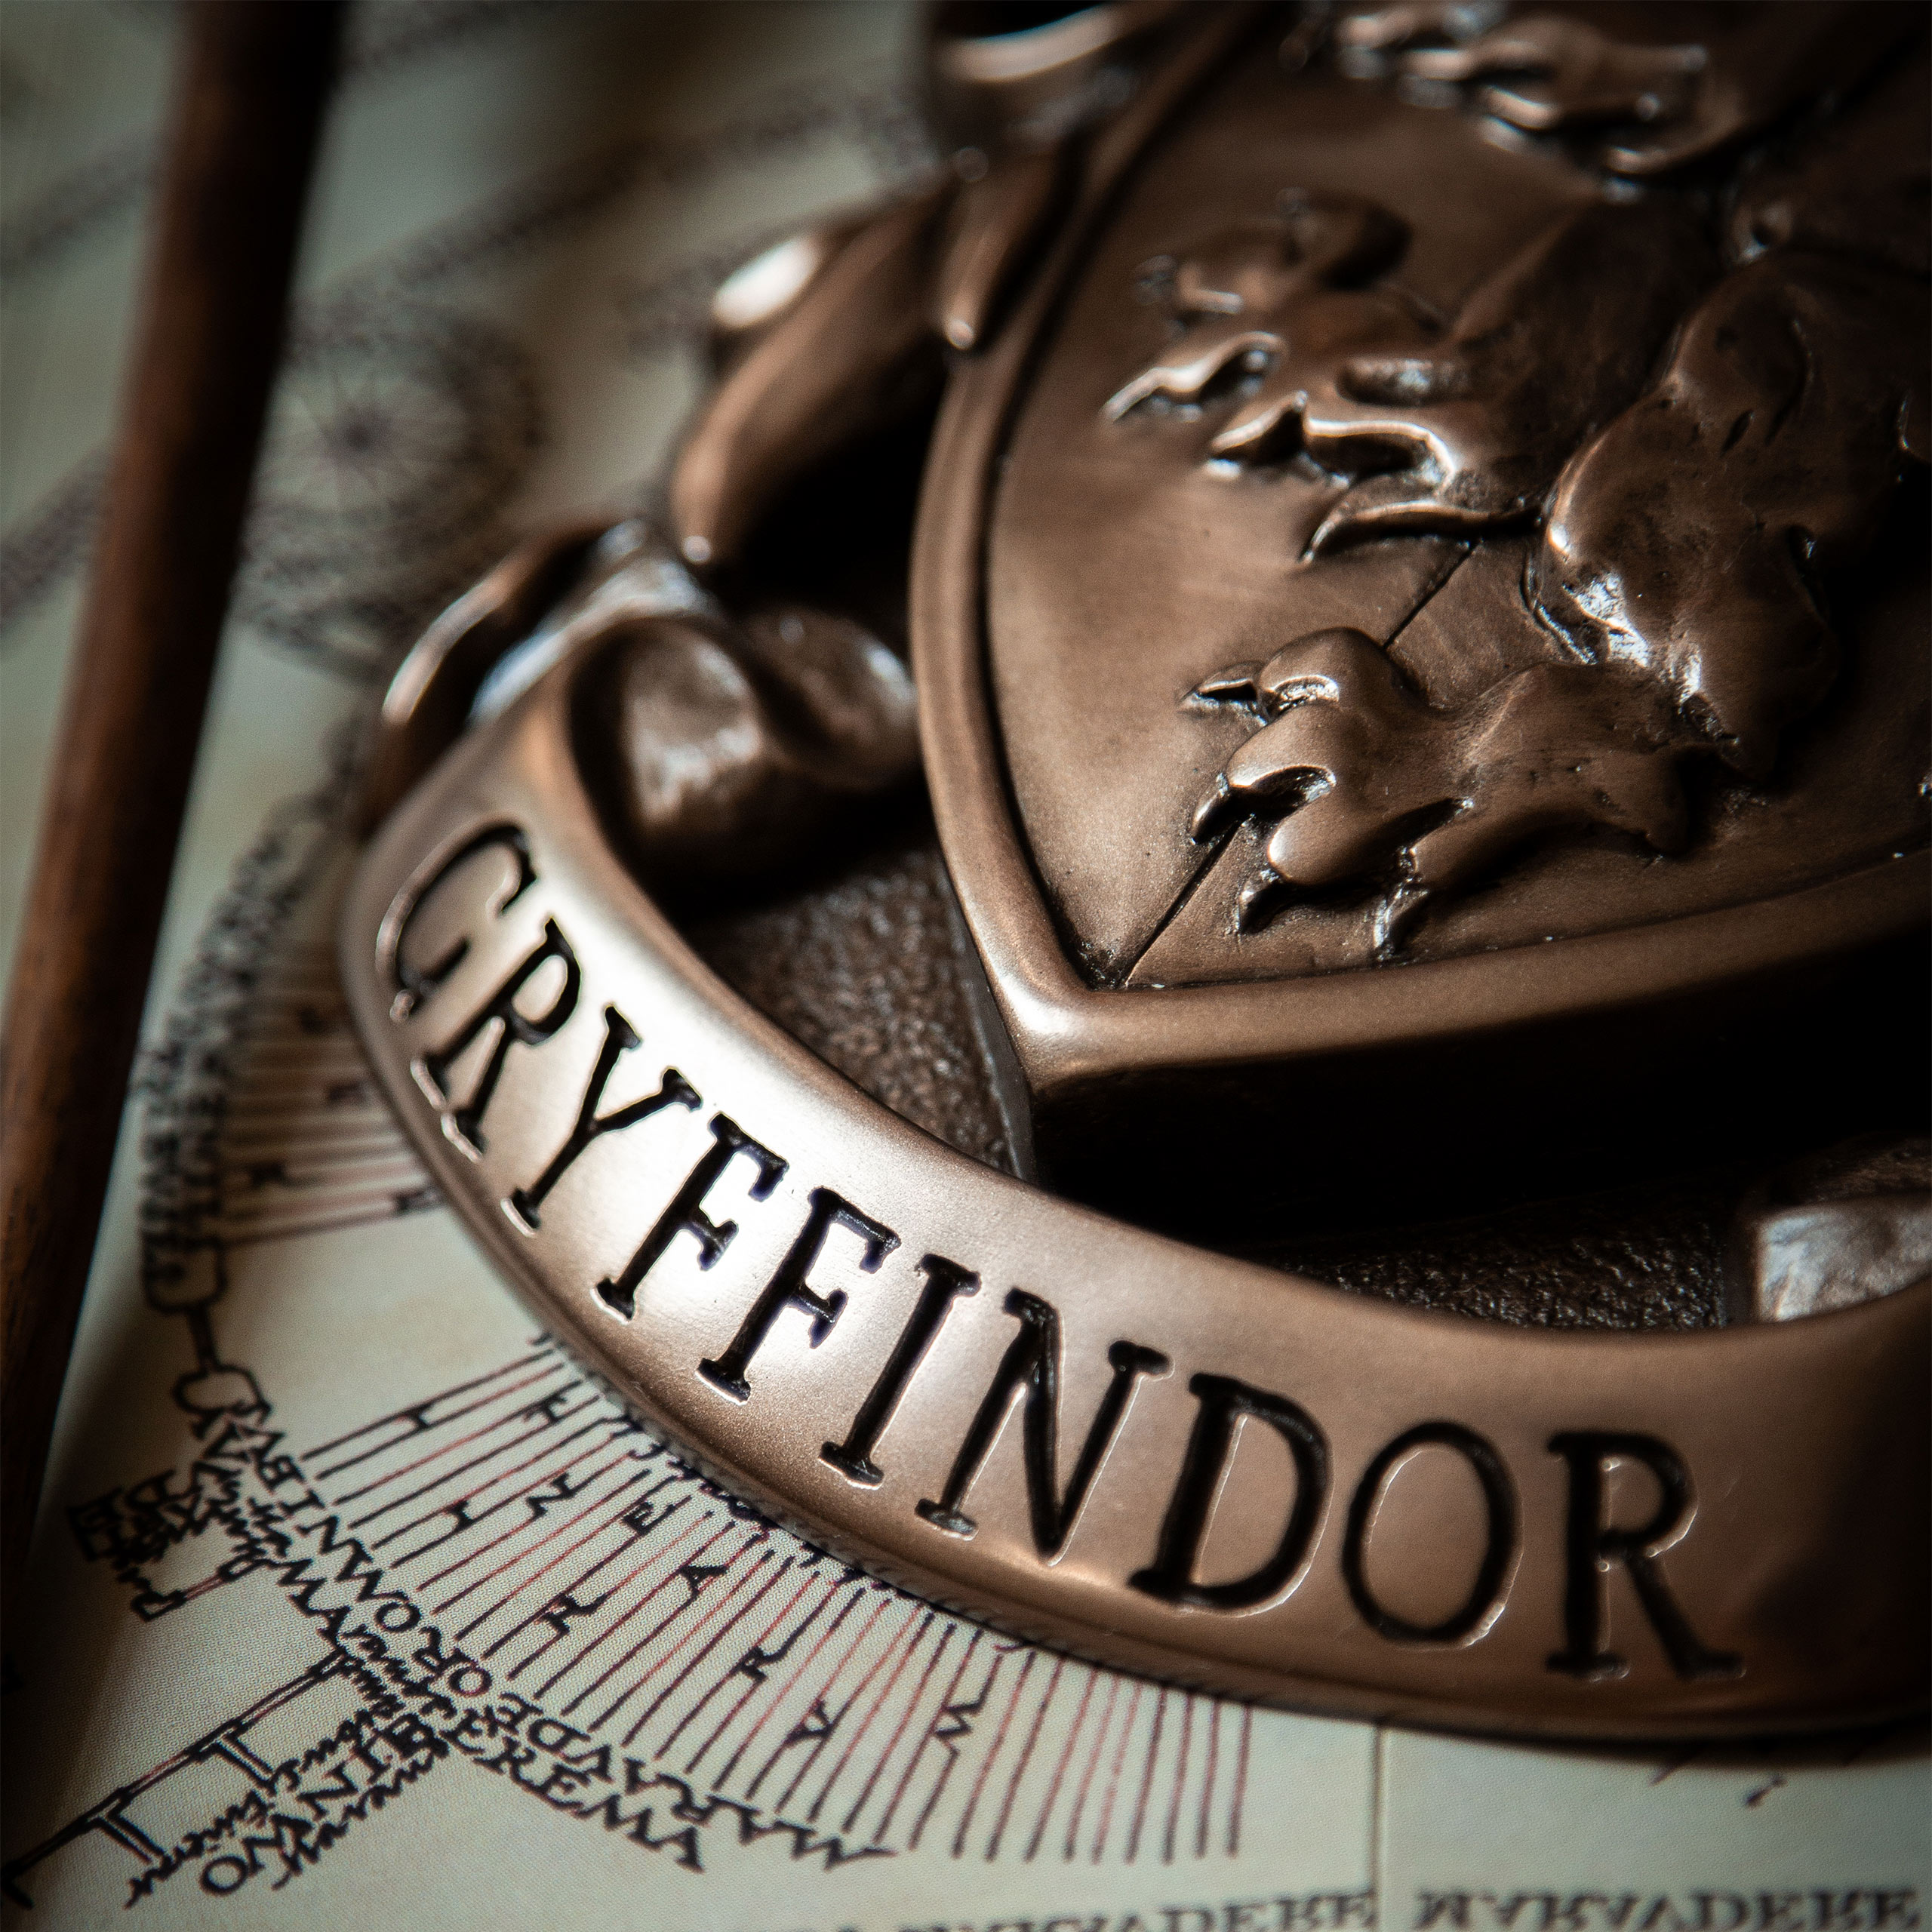 Harry Potter - Gryffindor Crest